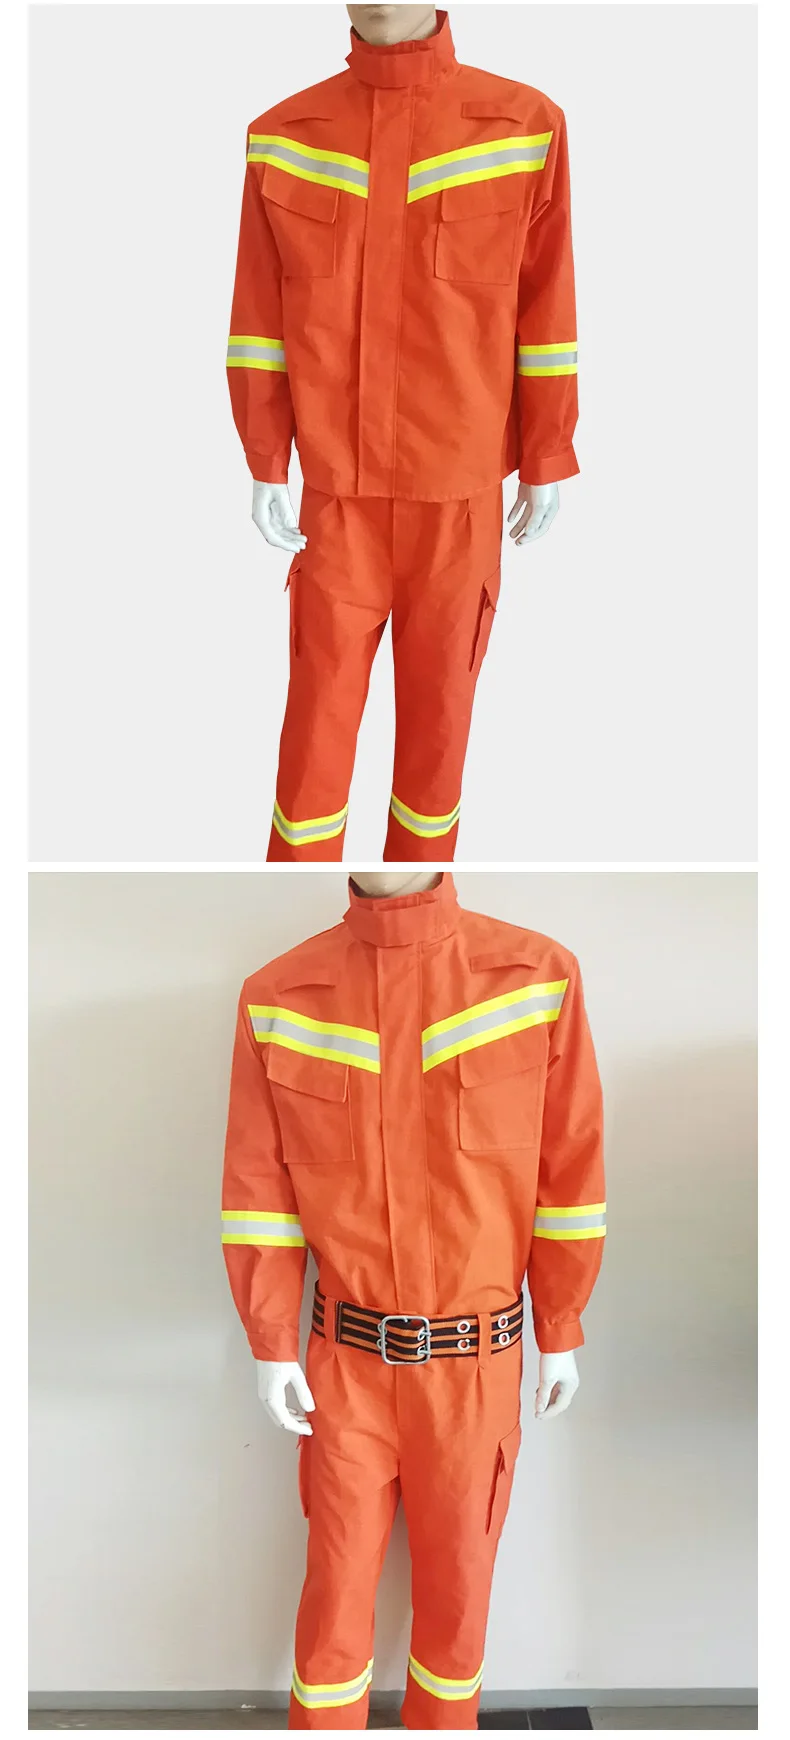 Анти-высокая температура пожарно-спасательный костюм анти-износ огнестойкая изоляция спасательный аварийный спасательный костюм